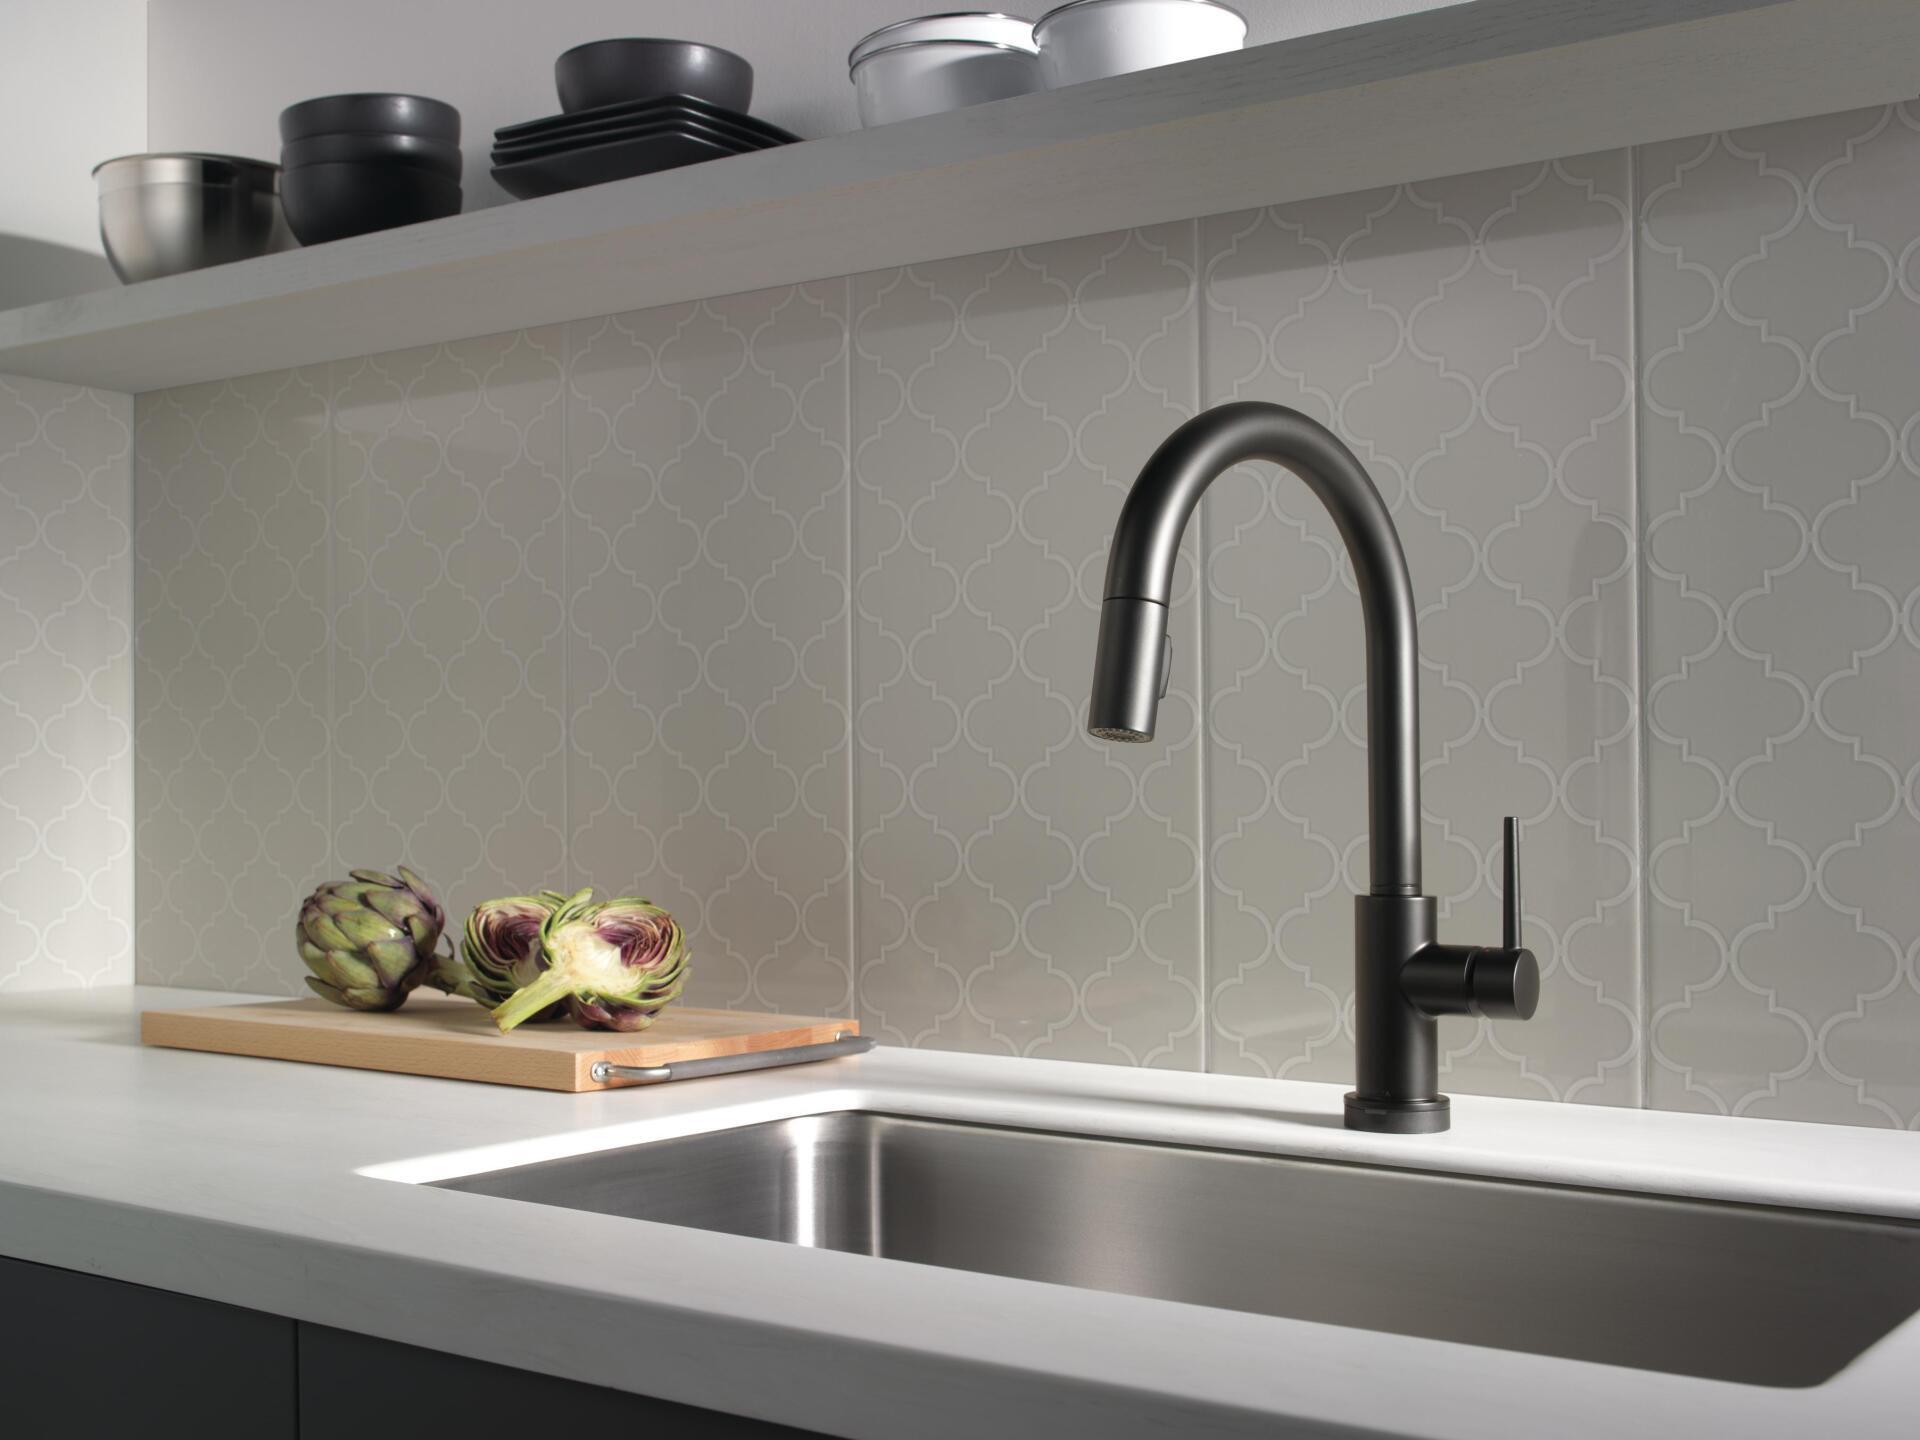 Black Delta Single handle kitchen faucet